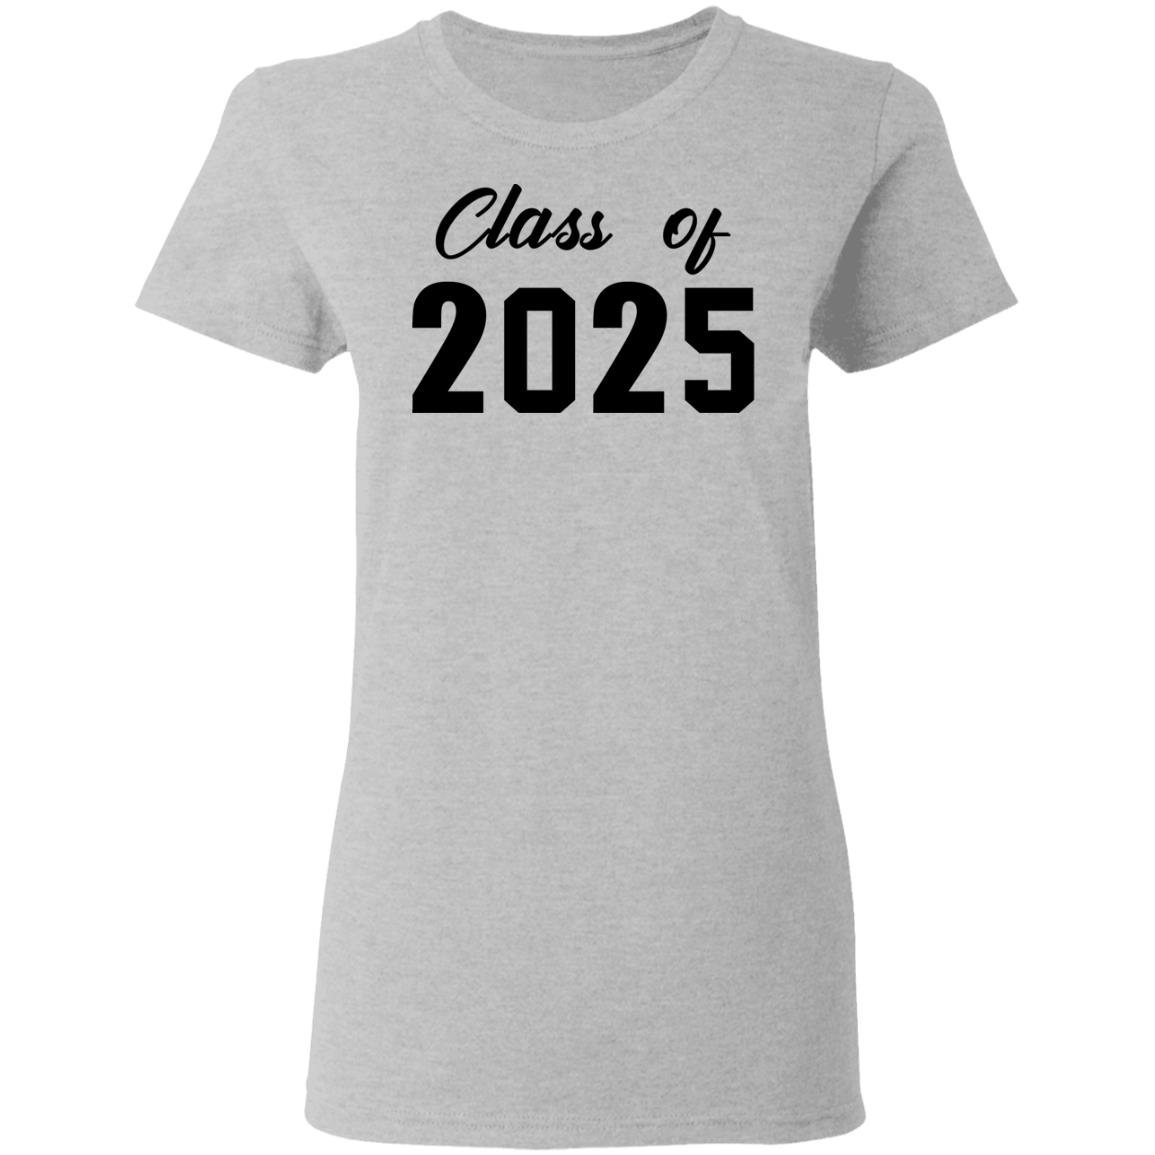 Class of 2025 shirt - Rockatee